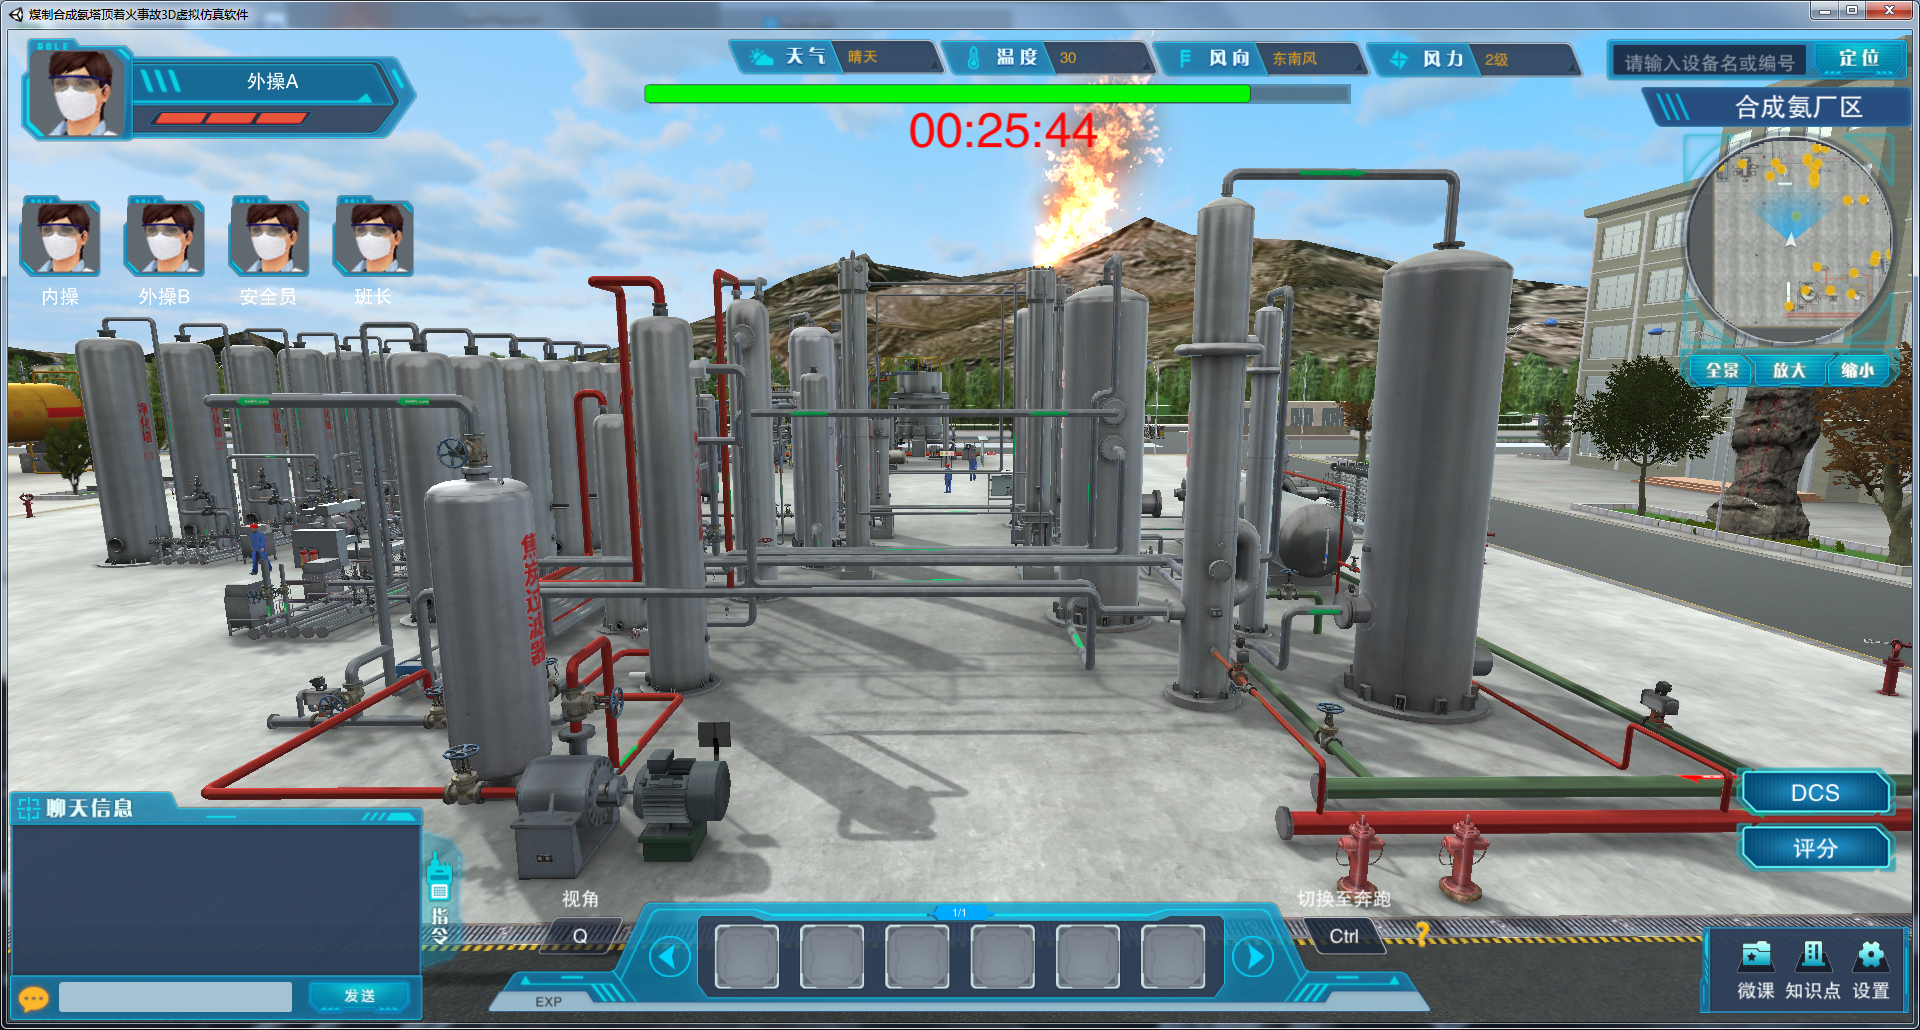 欧倍尔煤制合成氨塔顶着火事故虚拟仿真软件